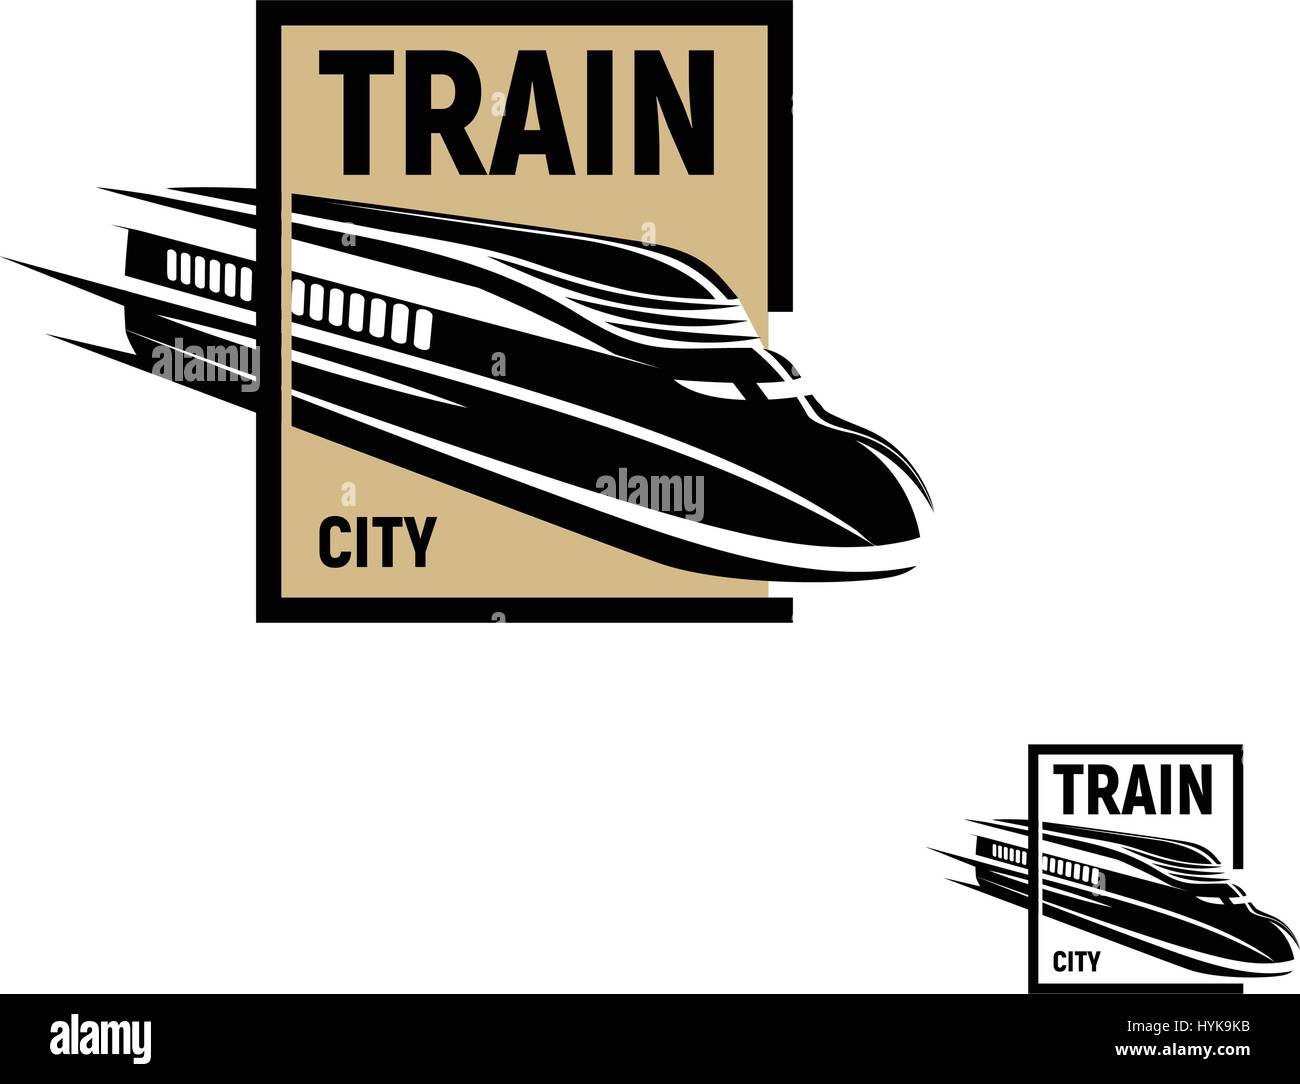 Isolierte abstrakt schwarz Zug in braun quadratisches Logo auf weißem Hintergrund, monochrome moderne Eisenbahn Transport Schriftzug, Eisenbahn Element in Gravur Stil-Vektor-illustration Stock Vektor